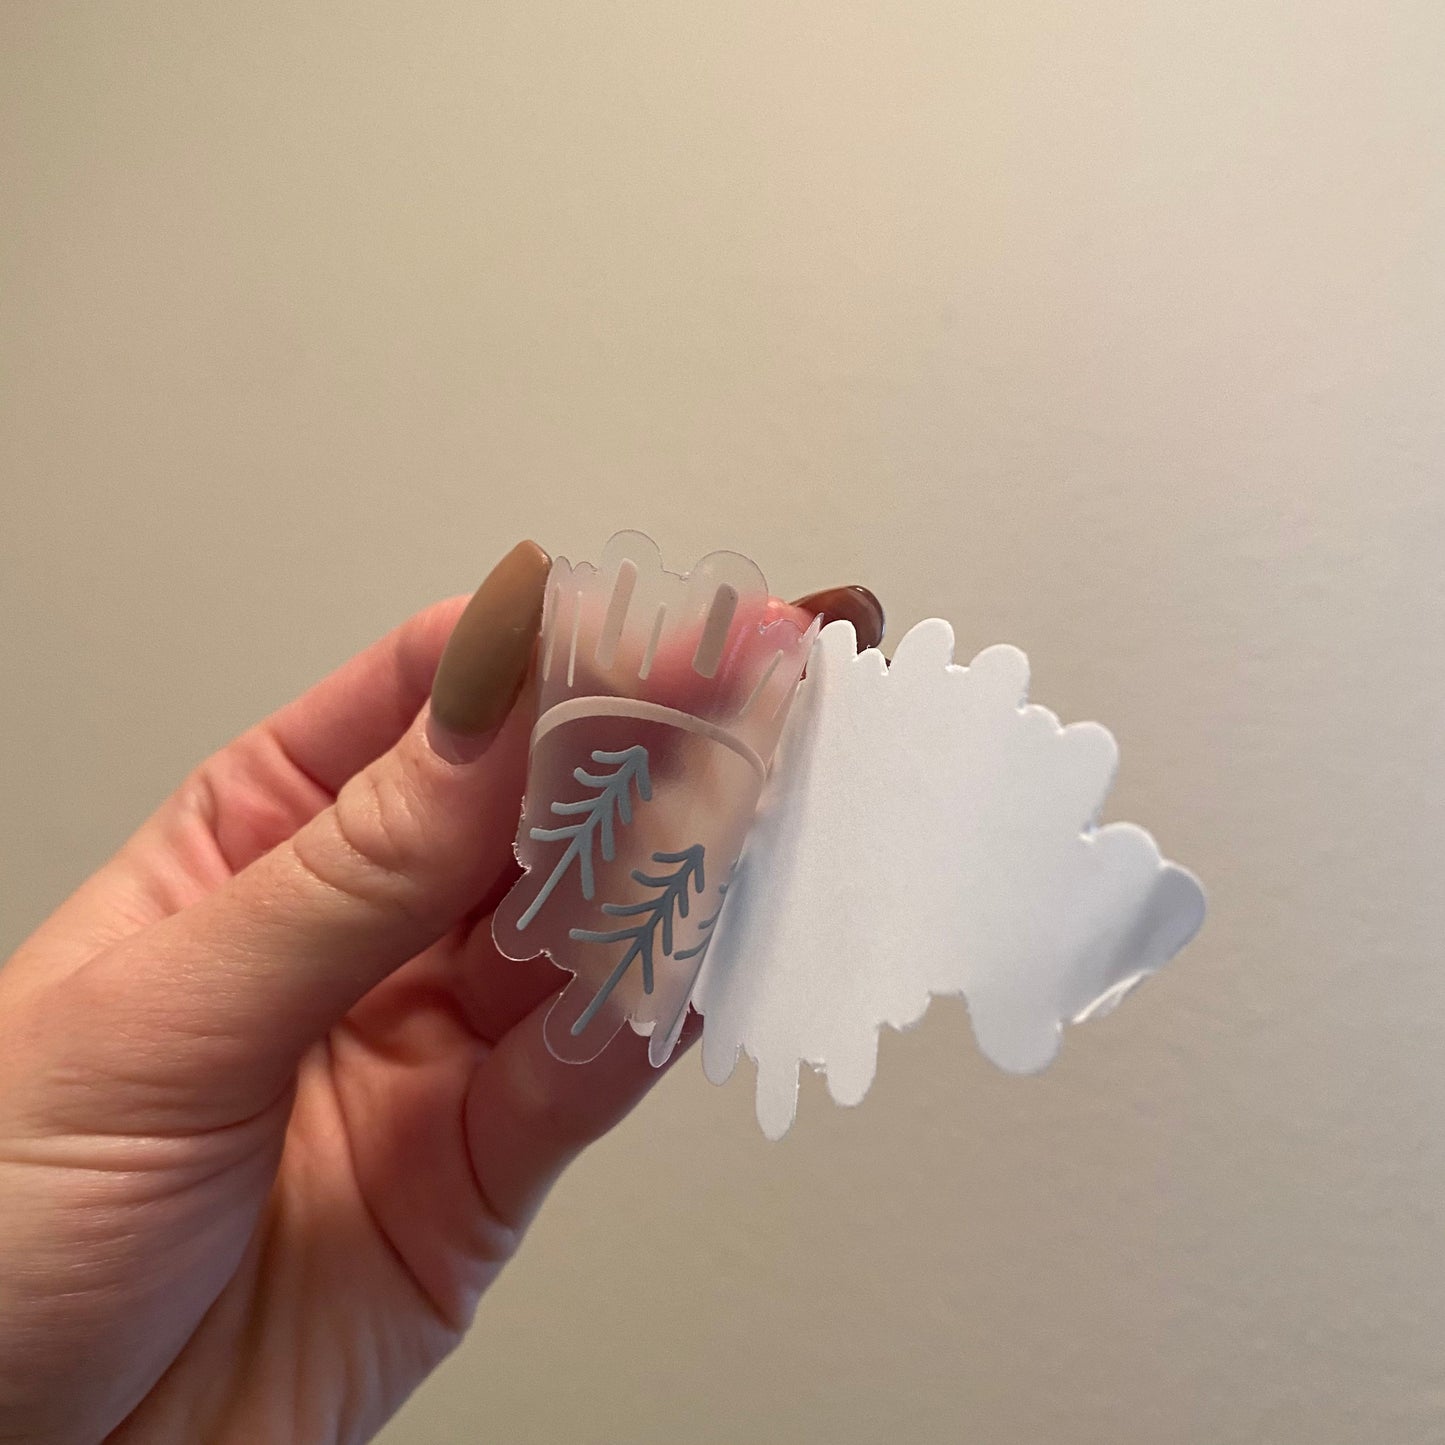 CLEAR Pine Tree Sun Waterproof Vinyl Sticker